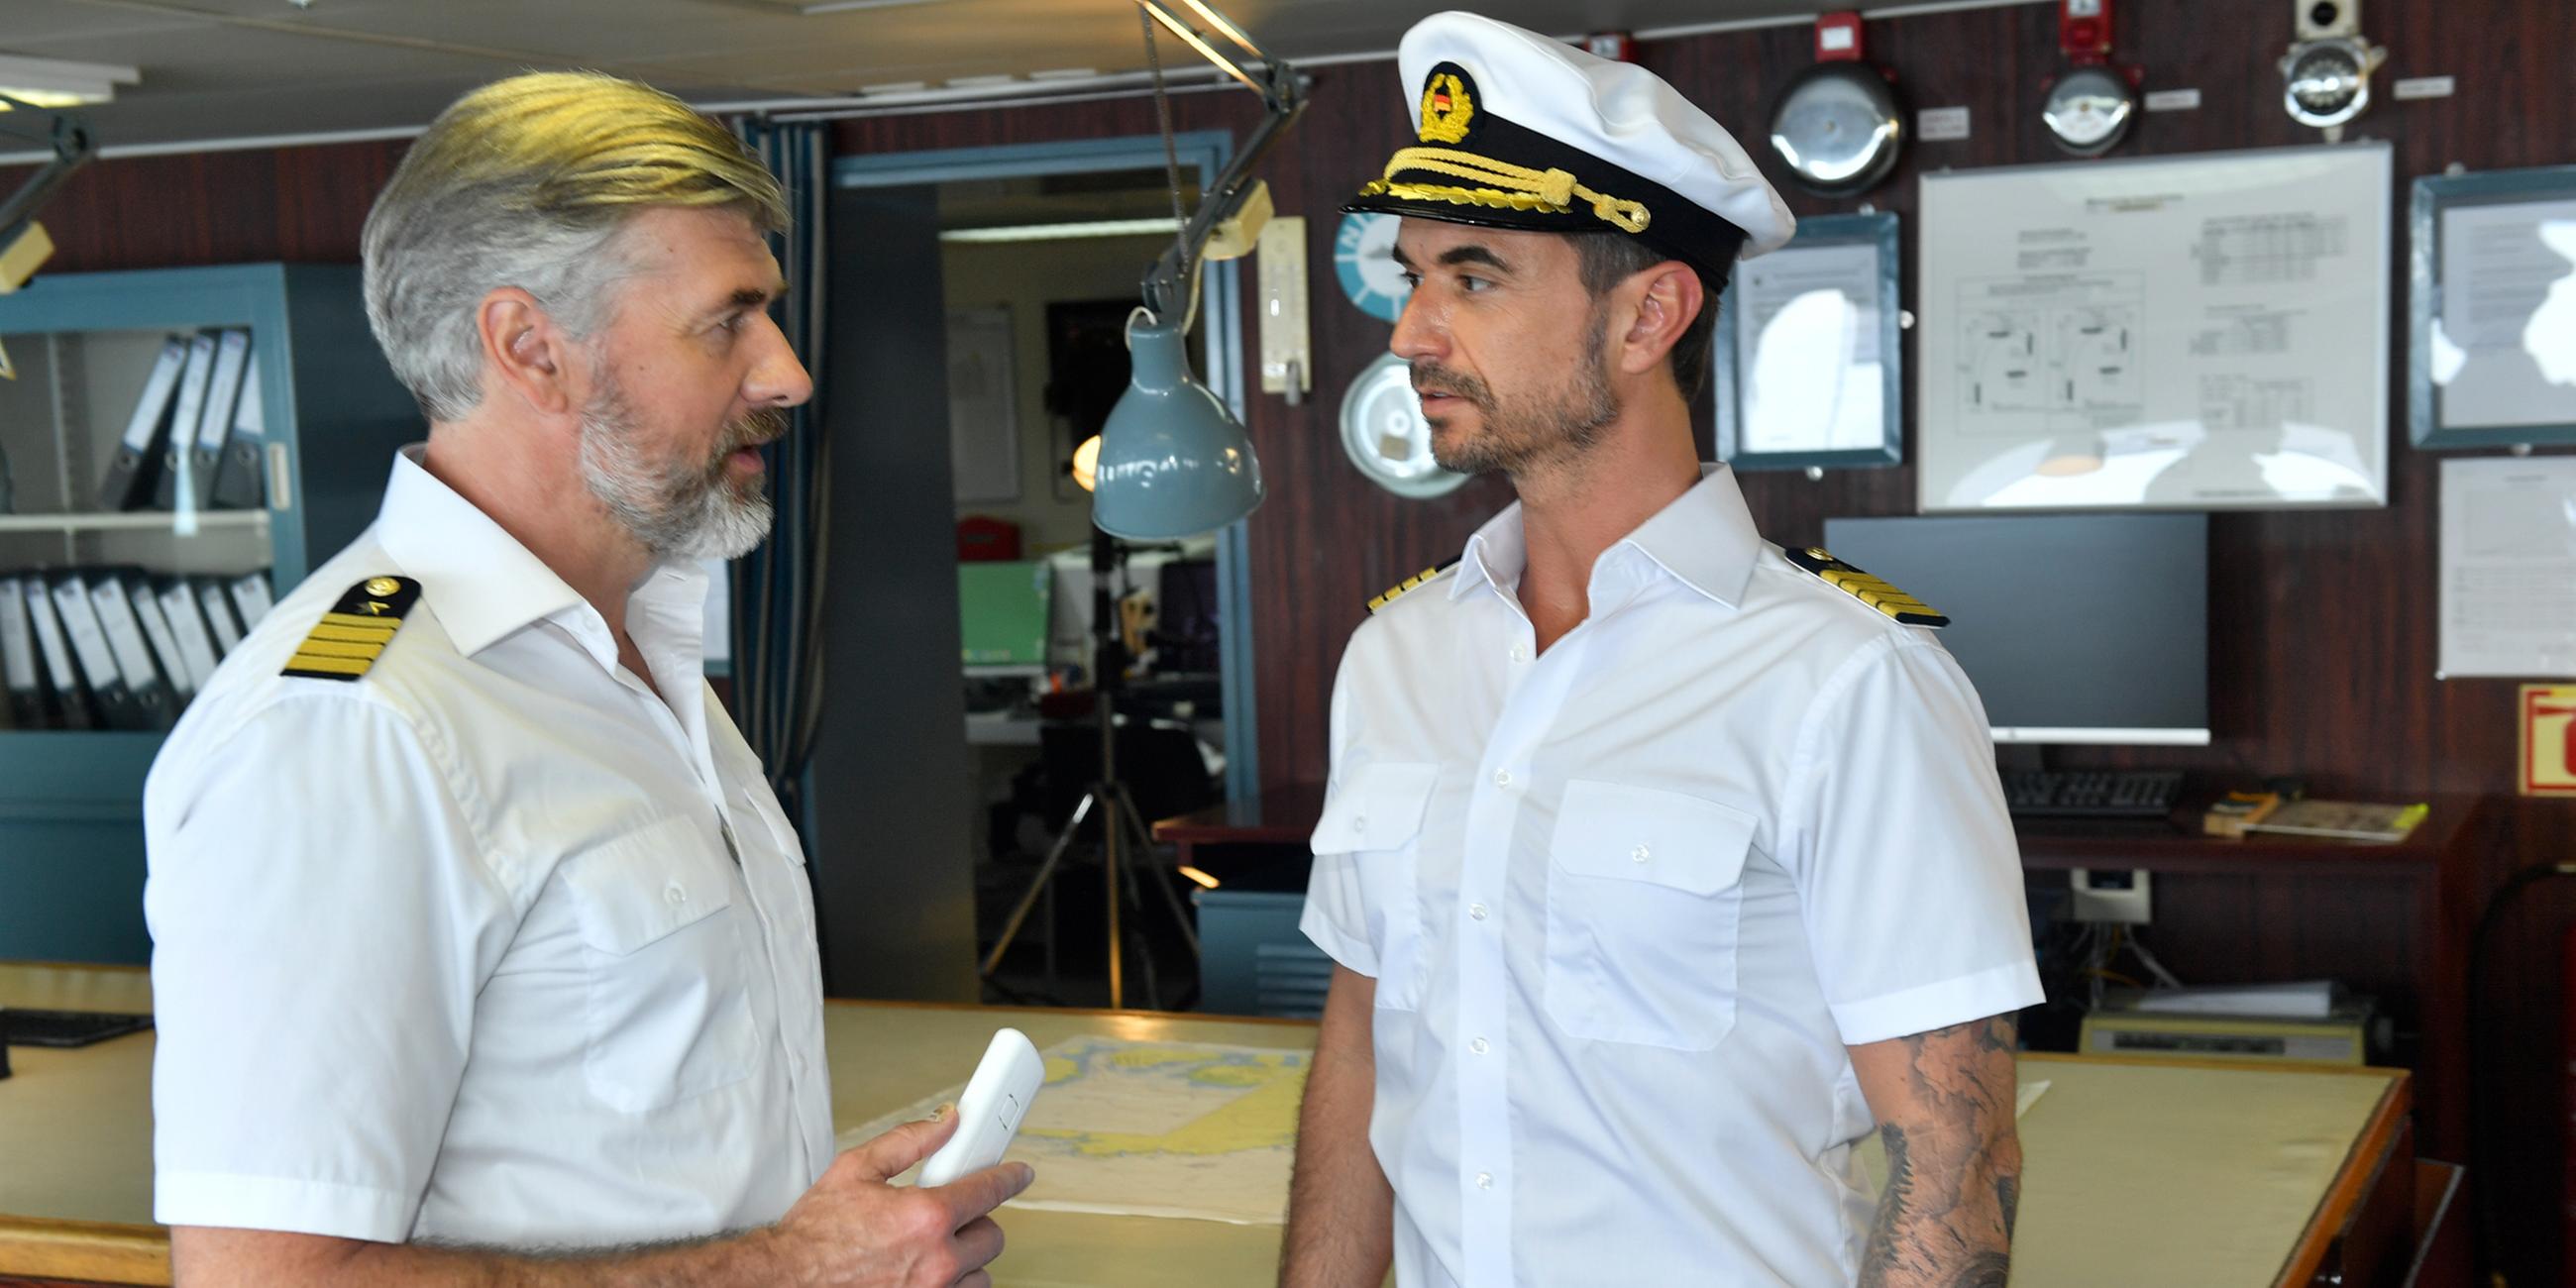 Staff-Kapitän Martin Grimm (Daniel Morgenroth) und Kapitän Max Parger (Florian Silbereisen) stehen auf der Brücke des Schiffs und schauen sich gegenseitig an.